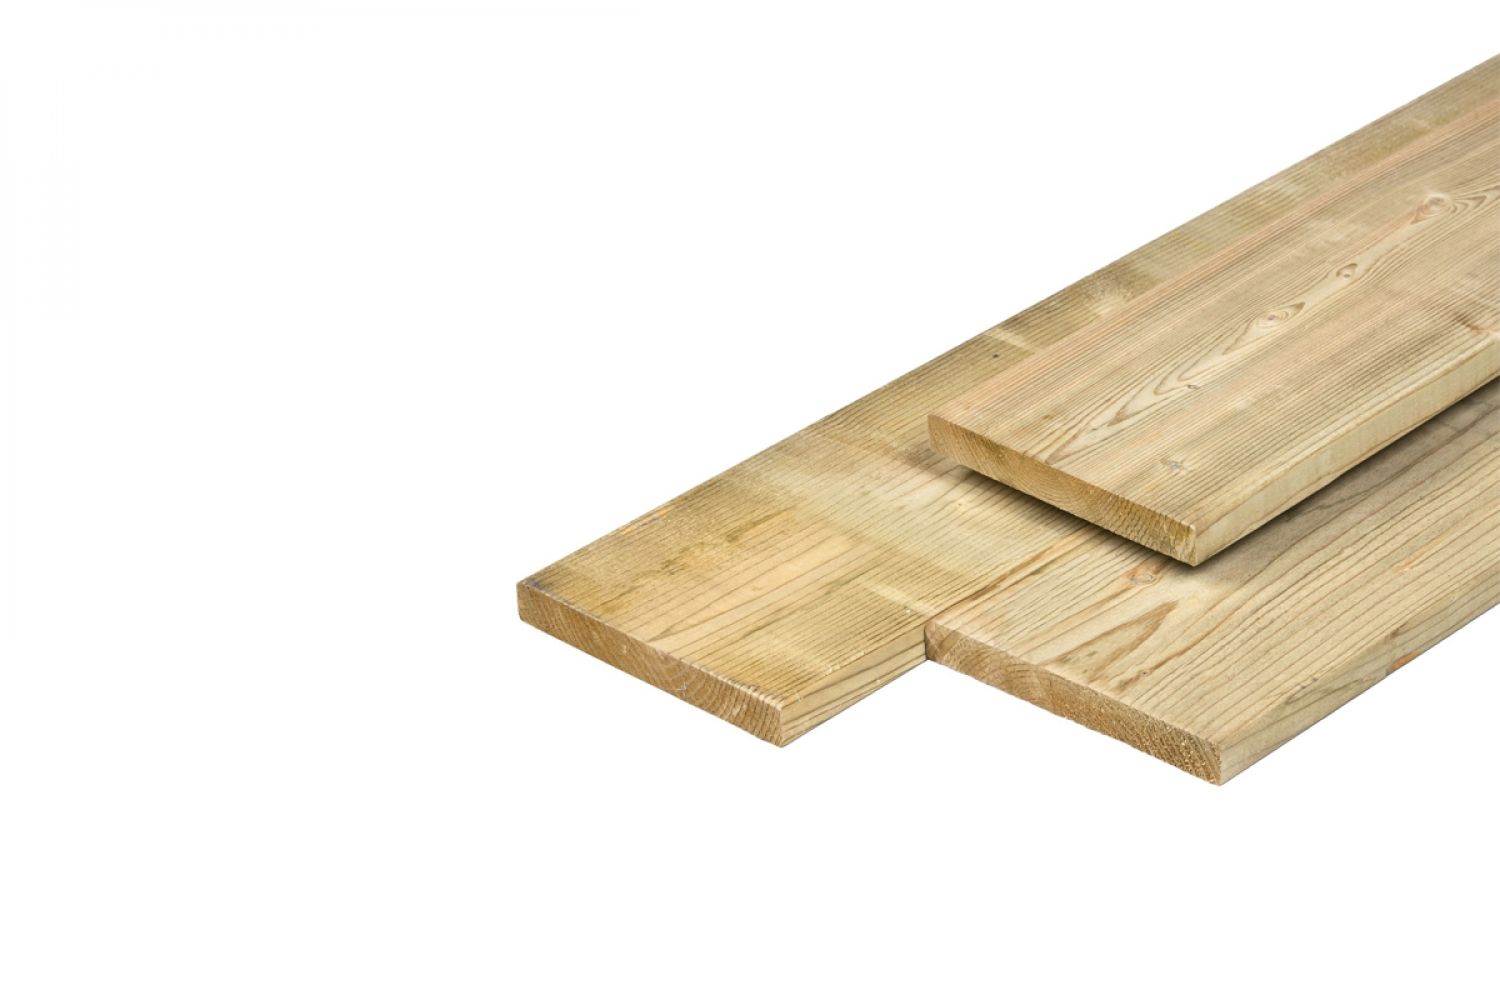 Noord-Zweeds planken glad geschaafd 1,8x14,5x540 cm